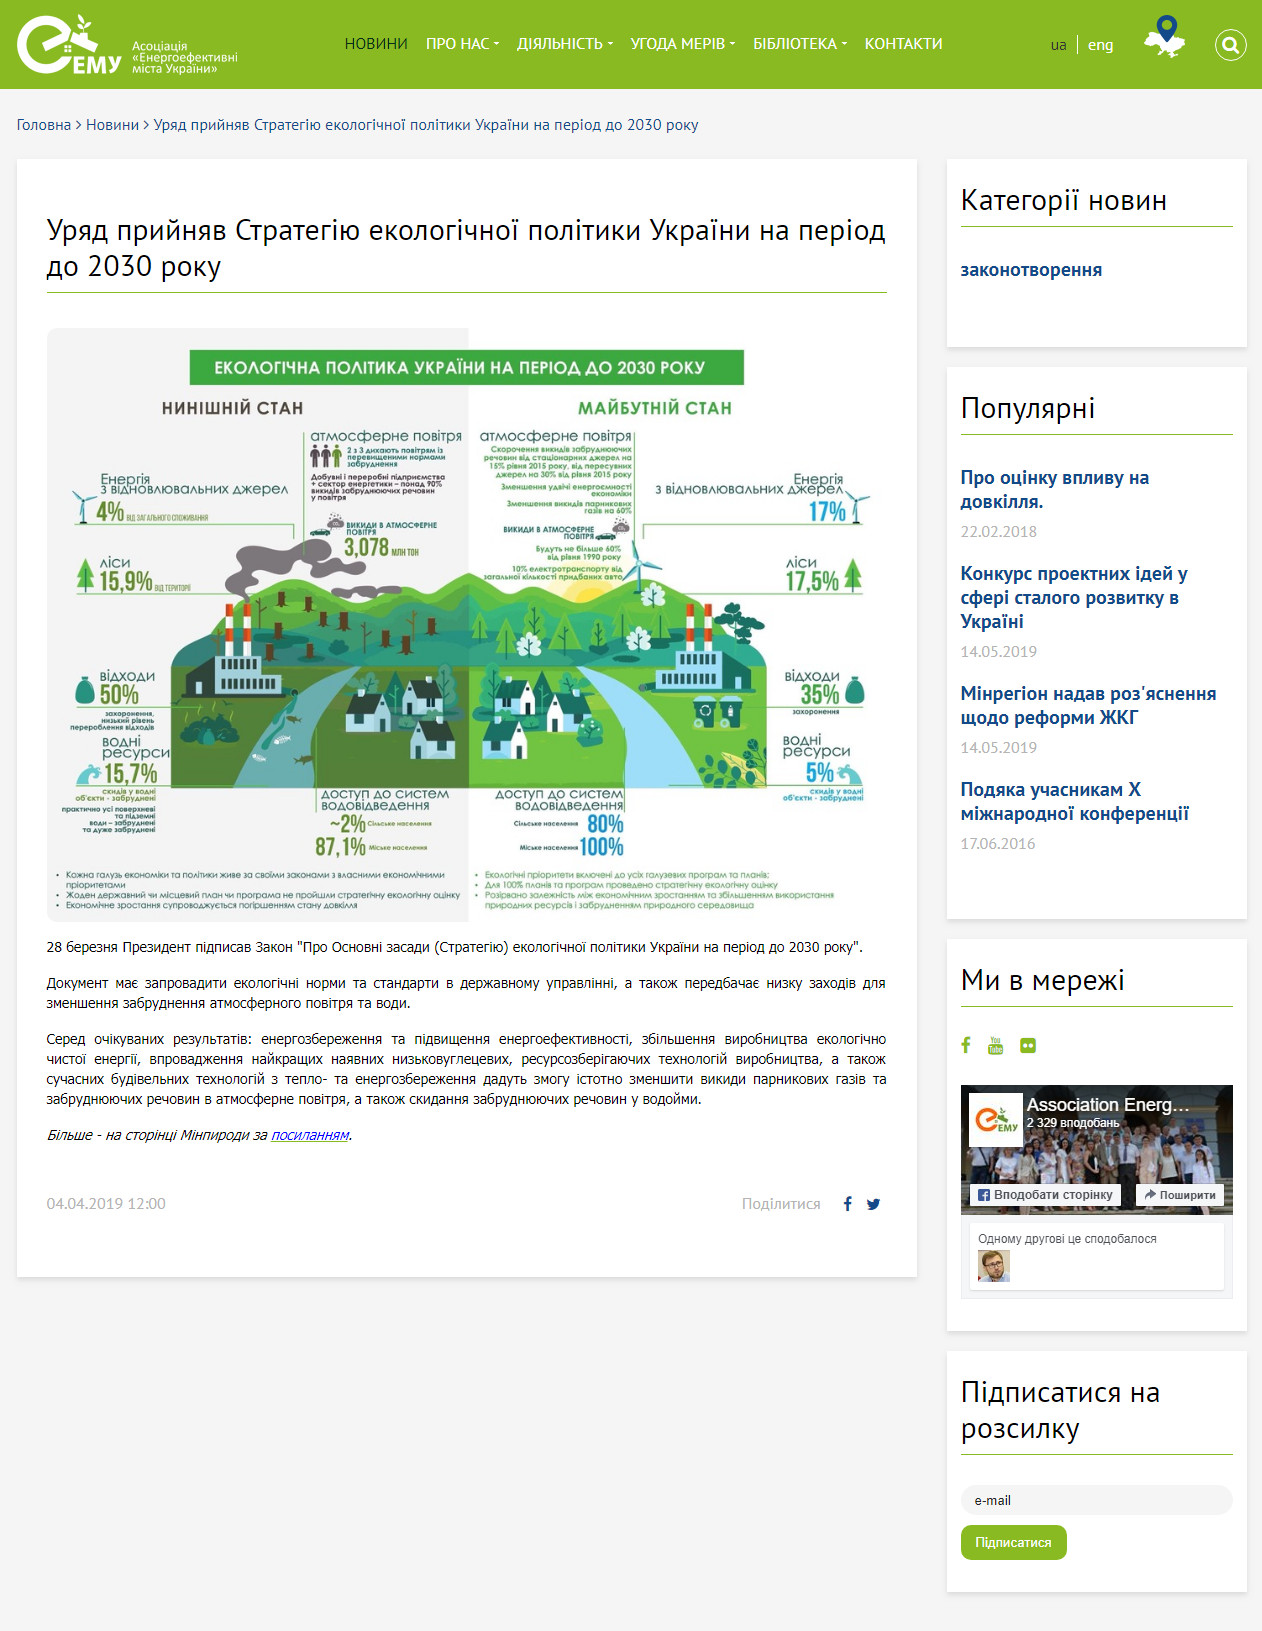 https://enefcities.org.ua/novyny/uryad-pryynyav-strategiyu-ekologichno-polityky-ukrany-na-period-do-2030-roku/